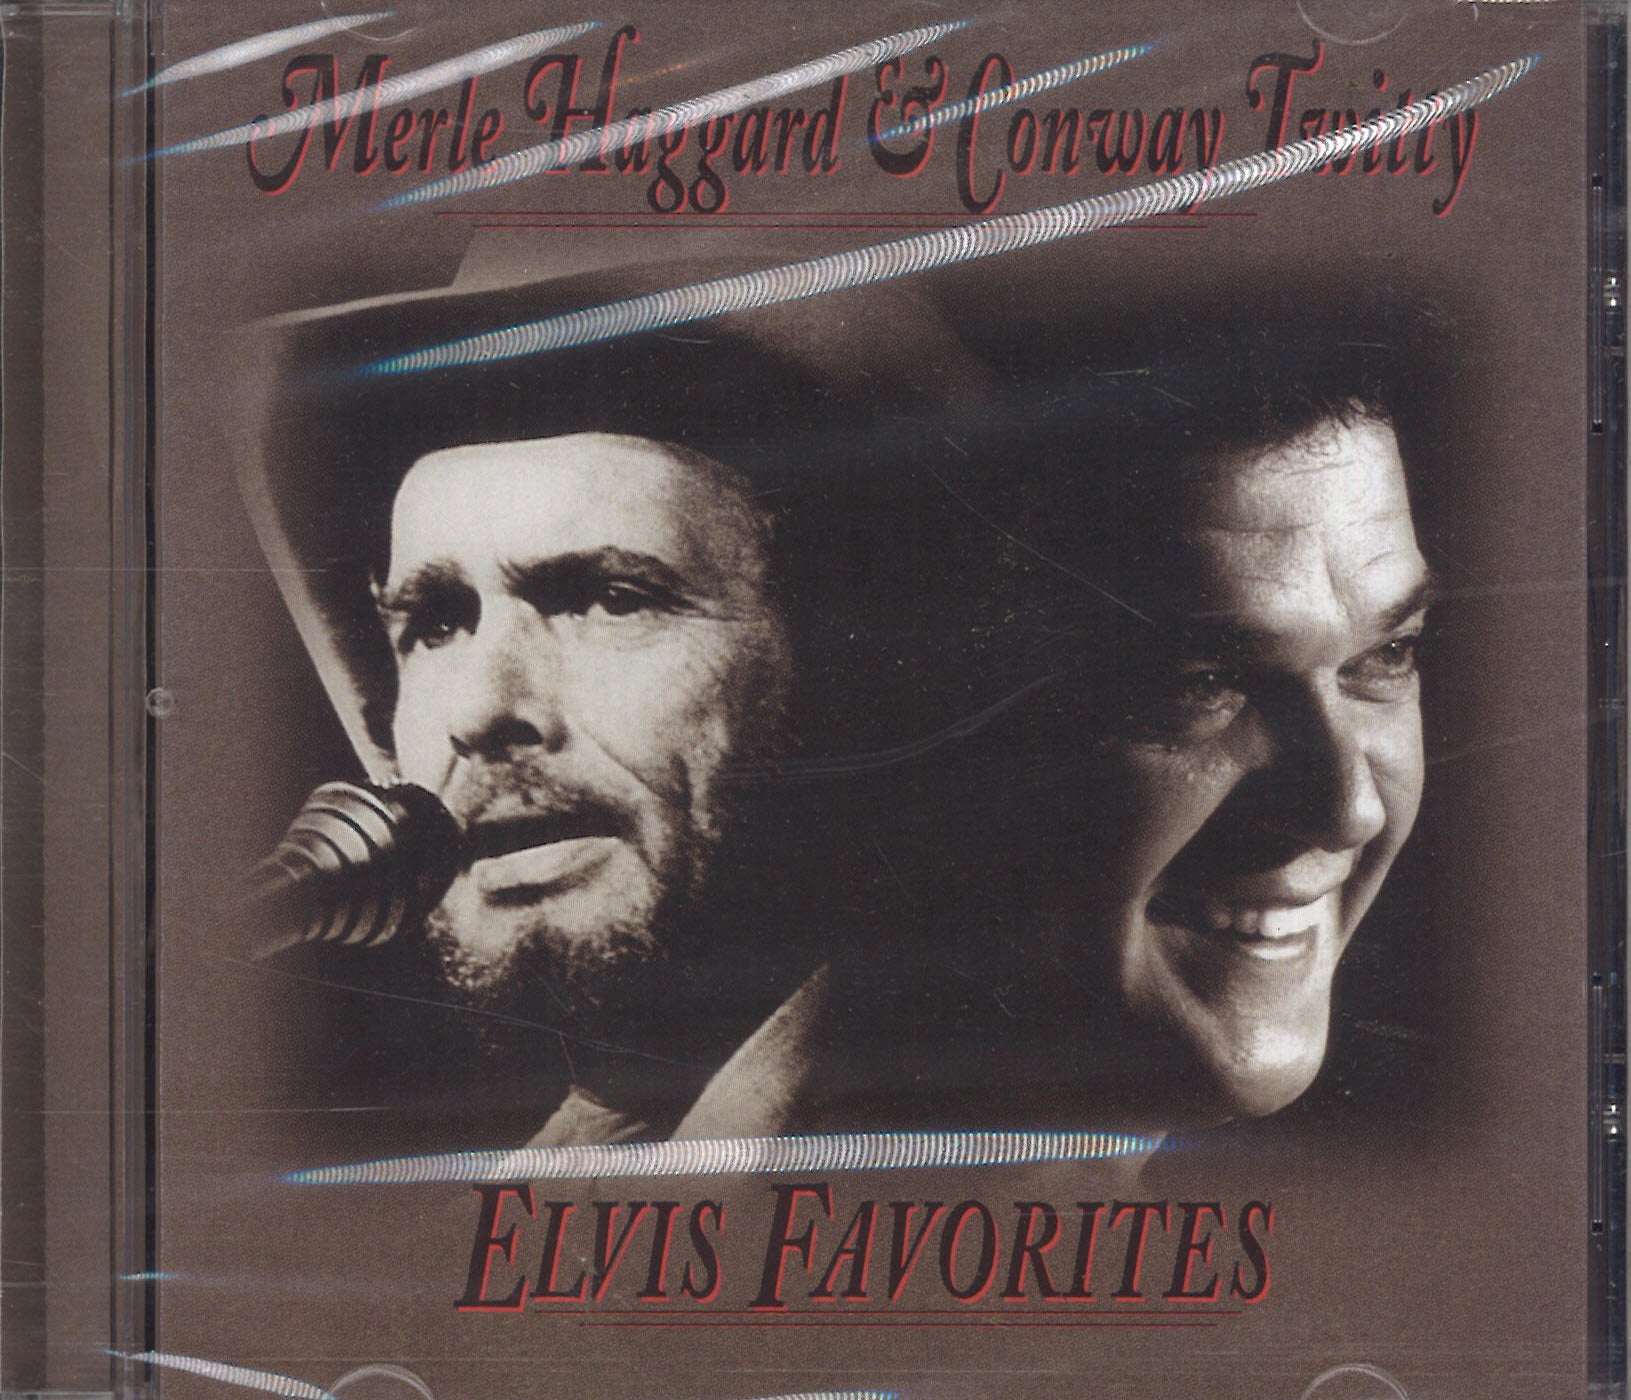 Merle Haggard & Conway Twitty Elvis Favorites